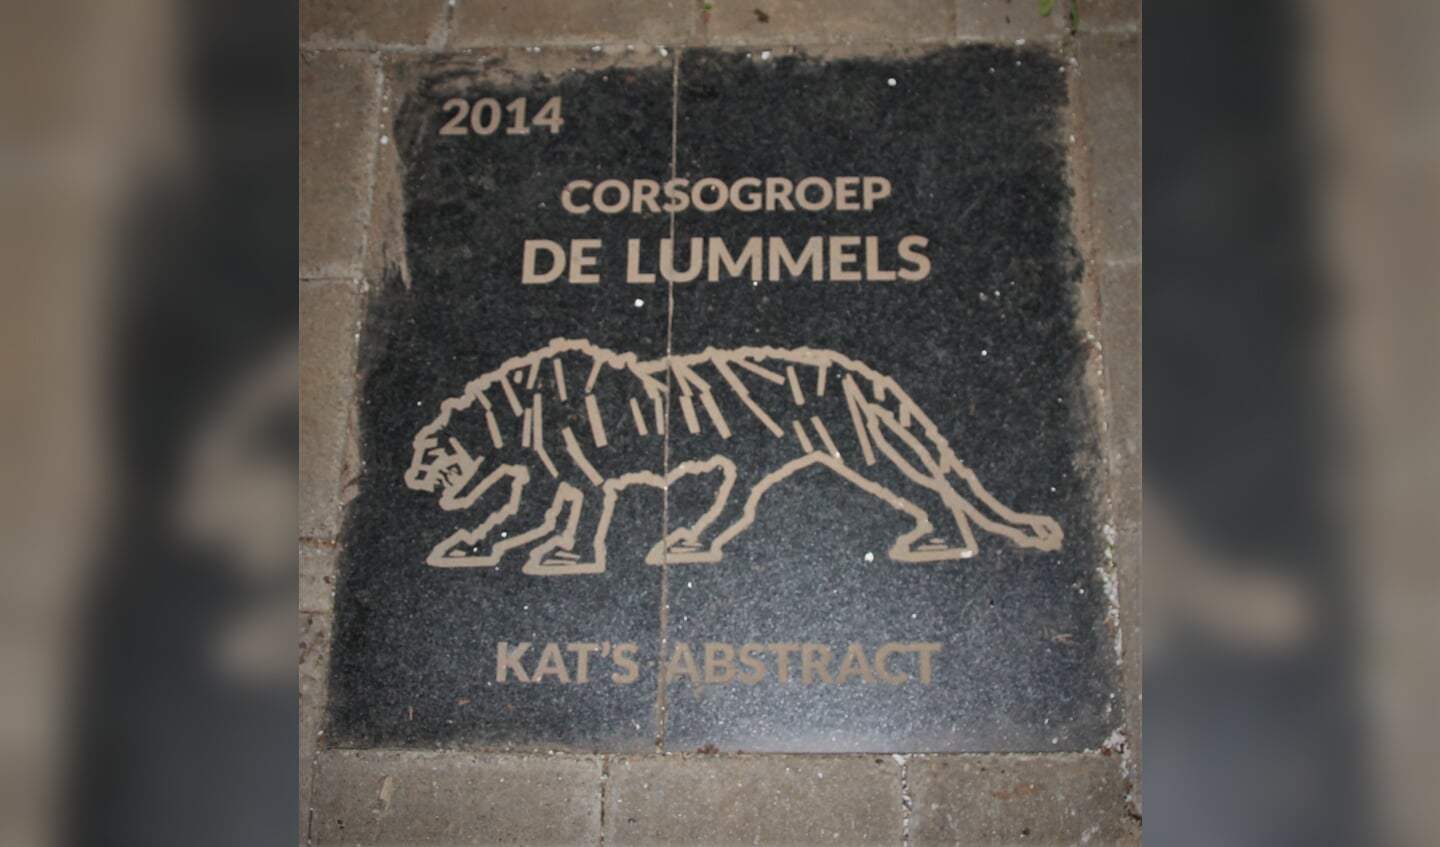 Tegel van De Lummels in de Rapenburgsestraat voor de eerste prijs in 2014 met de wagen 'Kat's abstract'. Foto: Jos Betting 